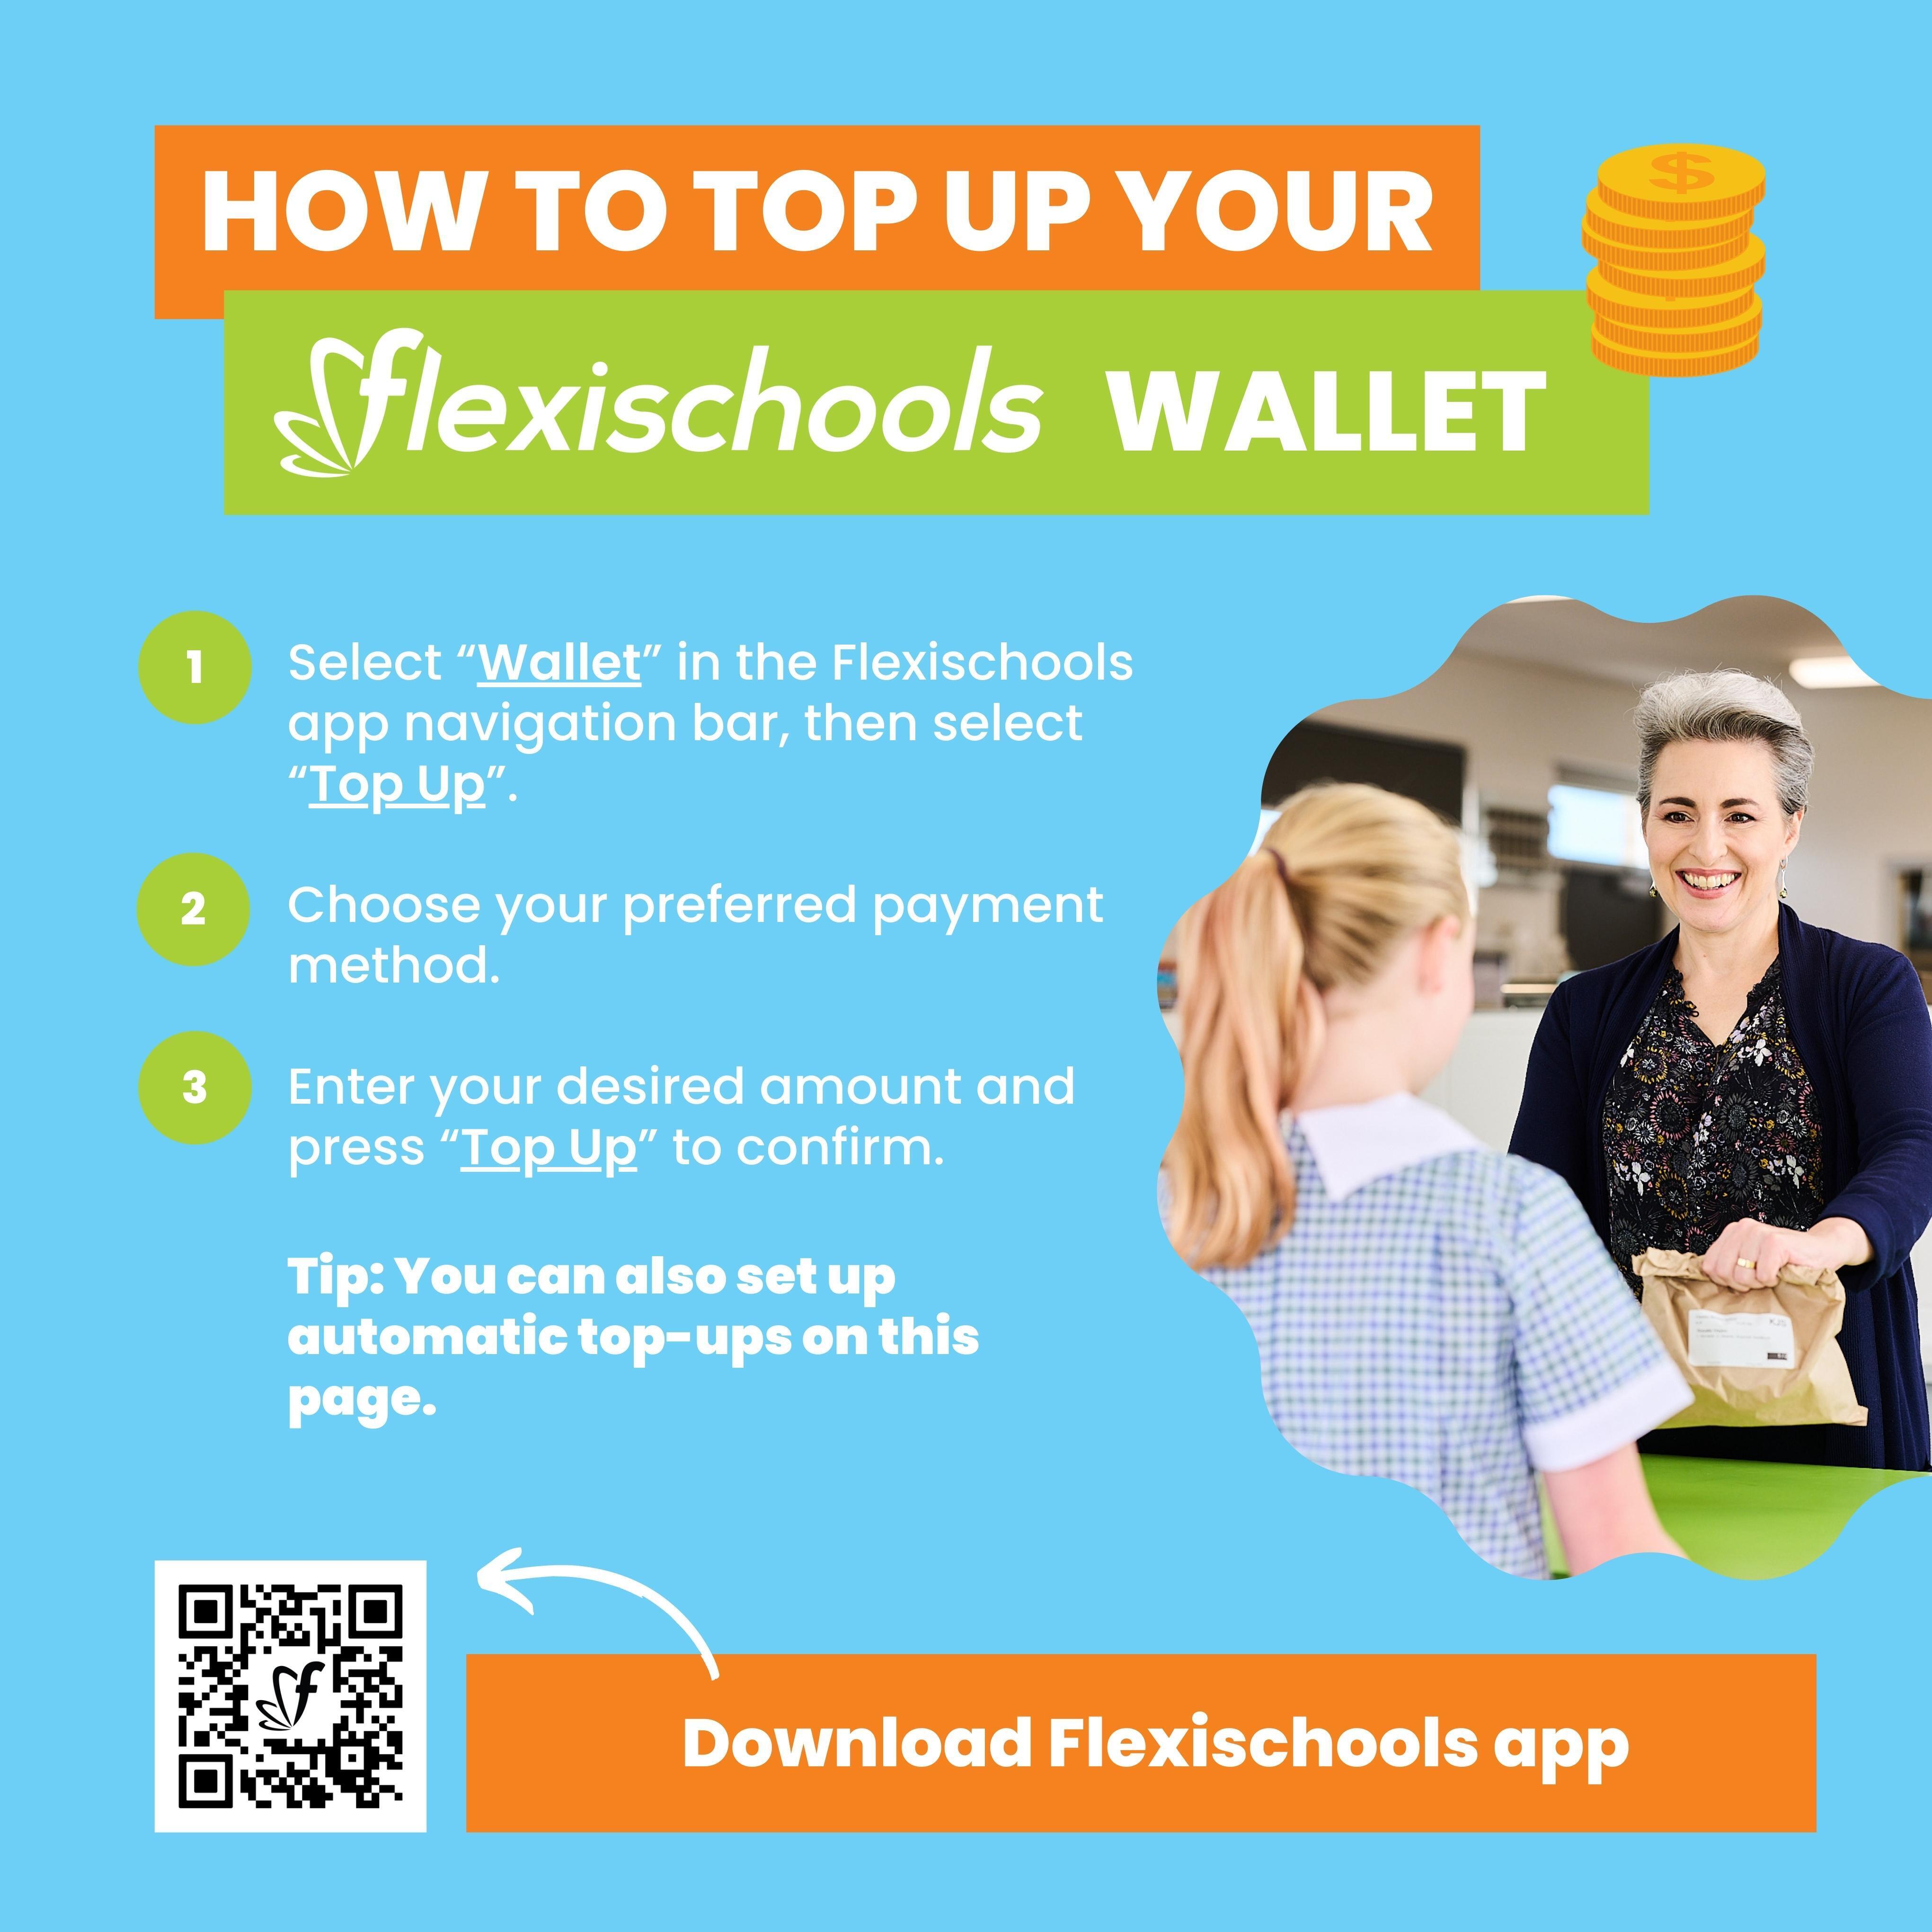 flexischools_how_to_top_up_your_wallet